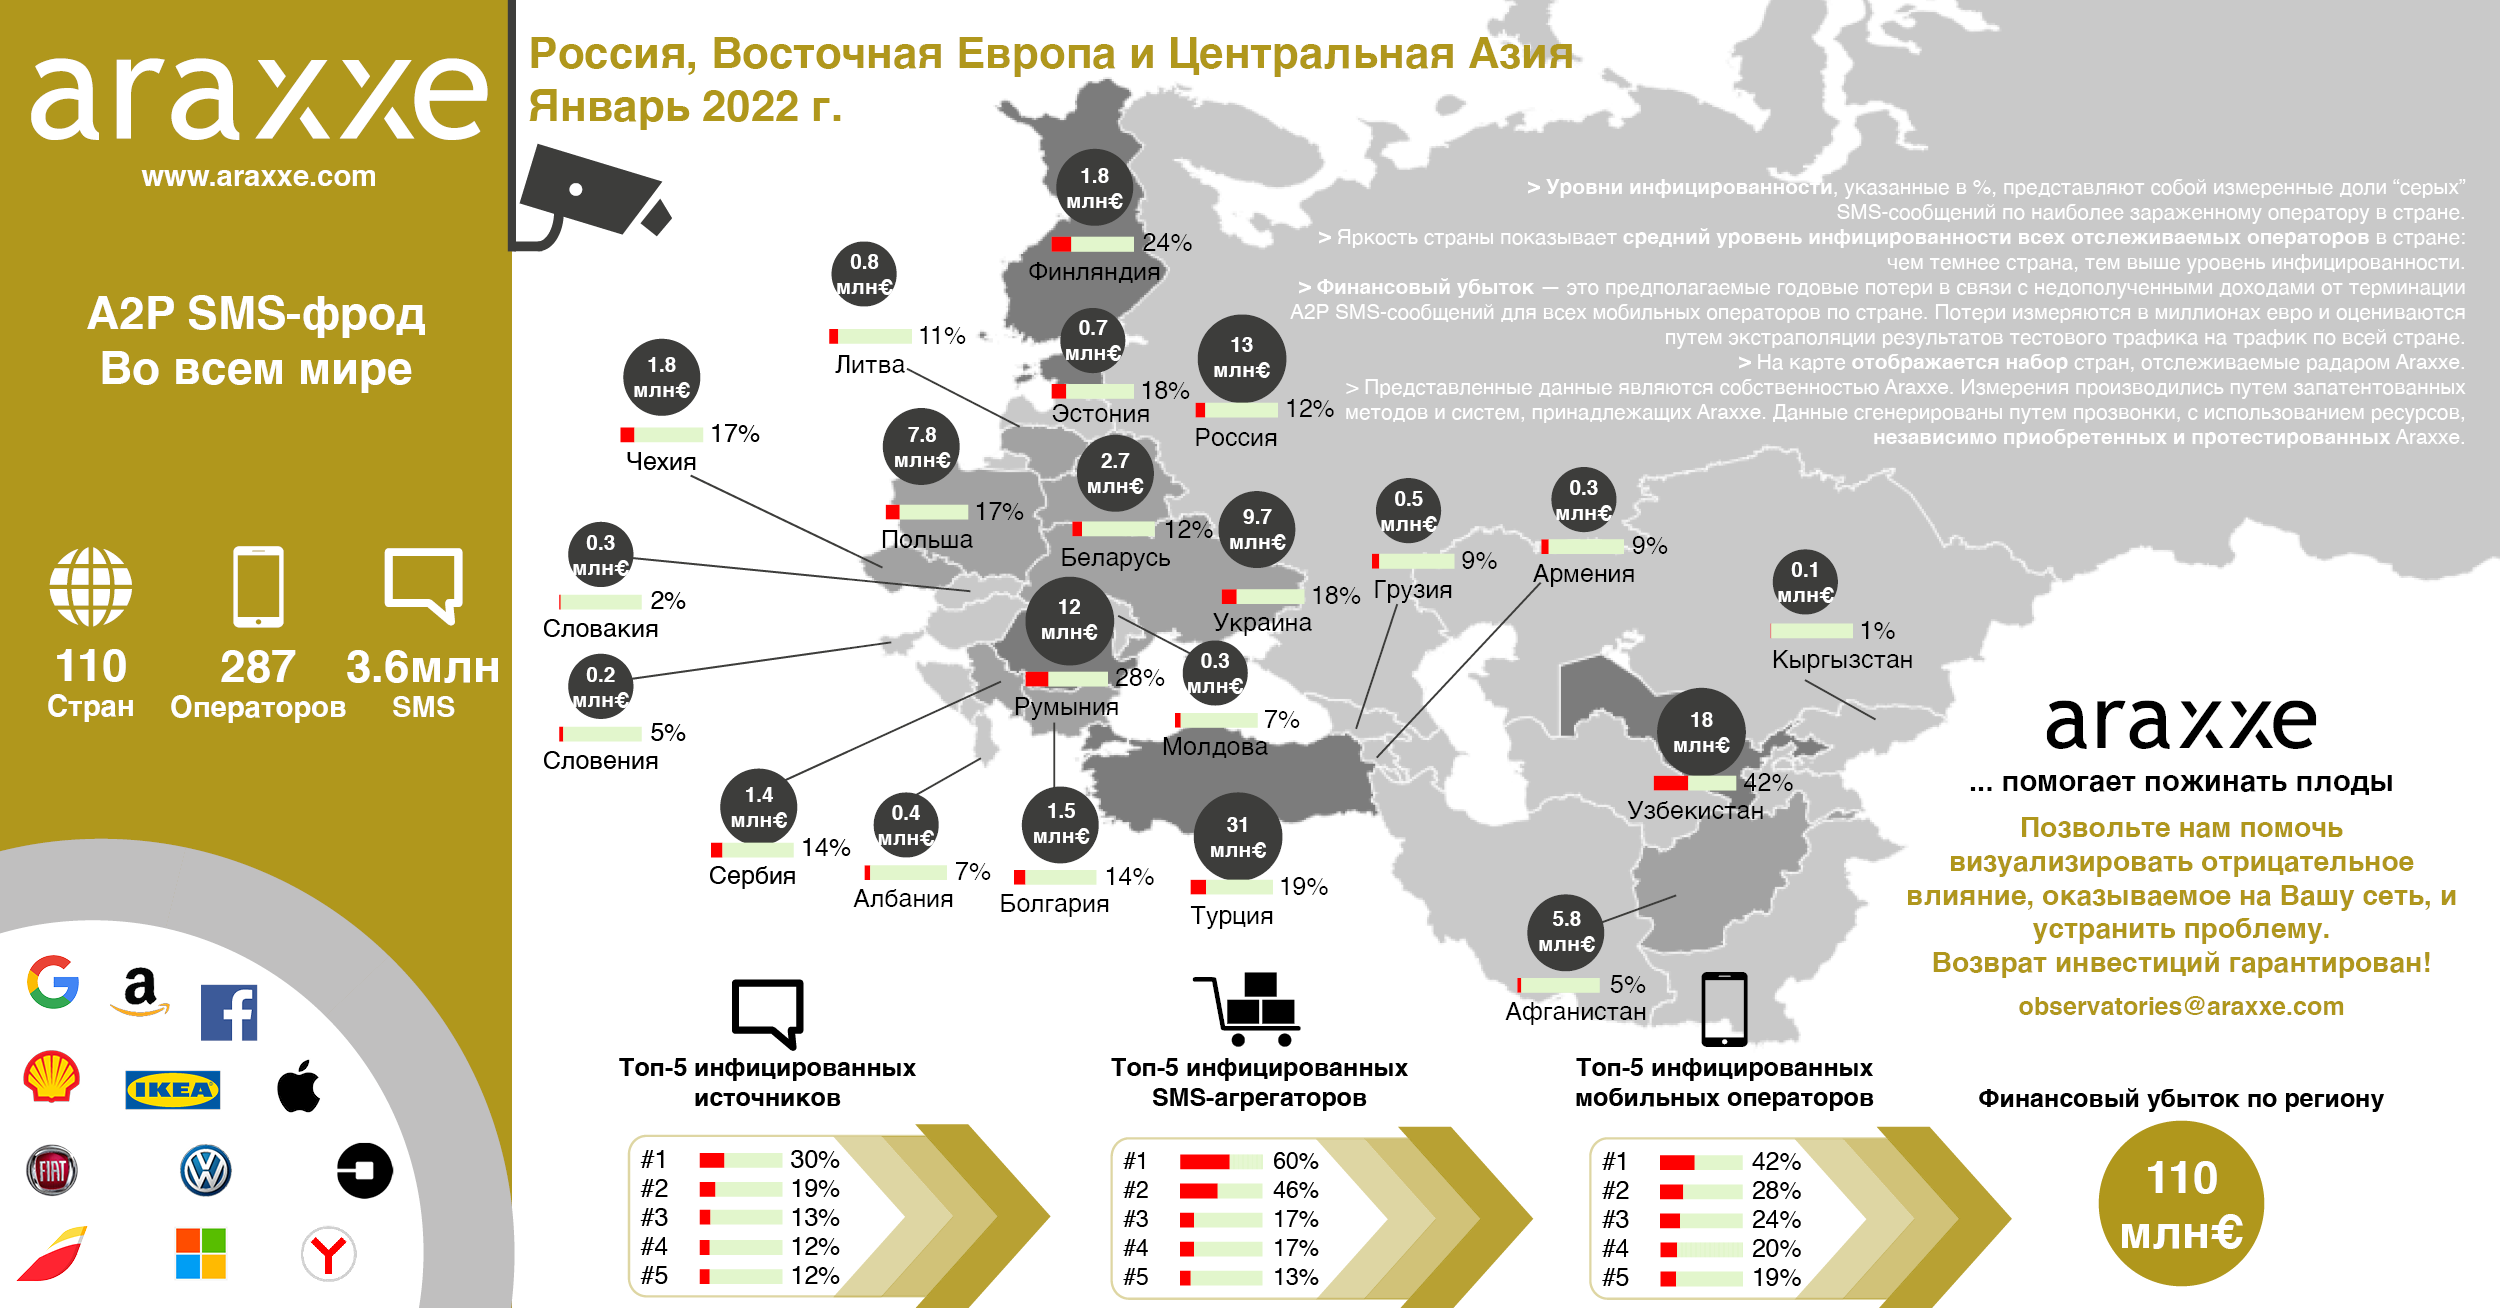 A2P SMS-фрод продолжает оказывать отрицательное влияние на доходы операторов связи из России, Восточной Европы и Центральной Азии